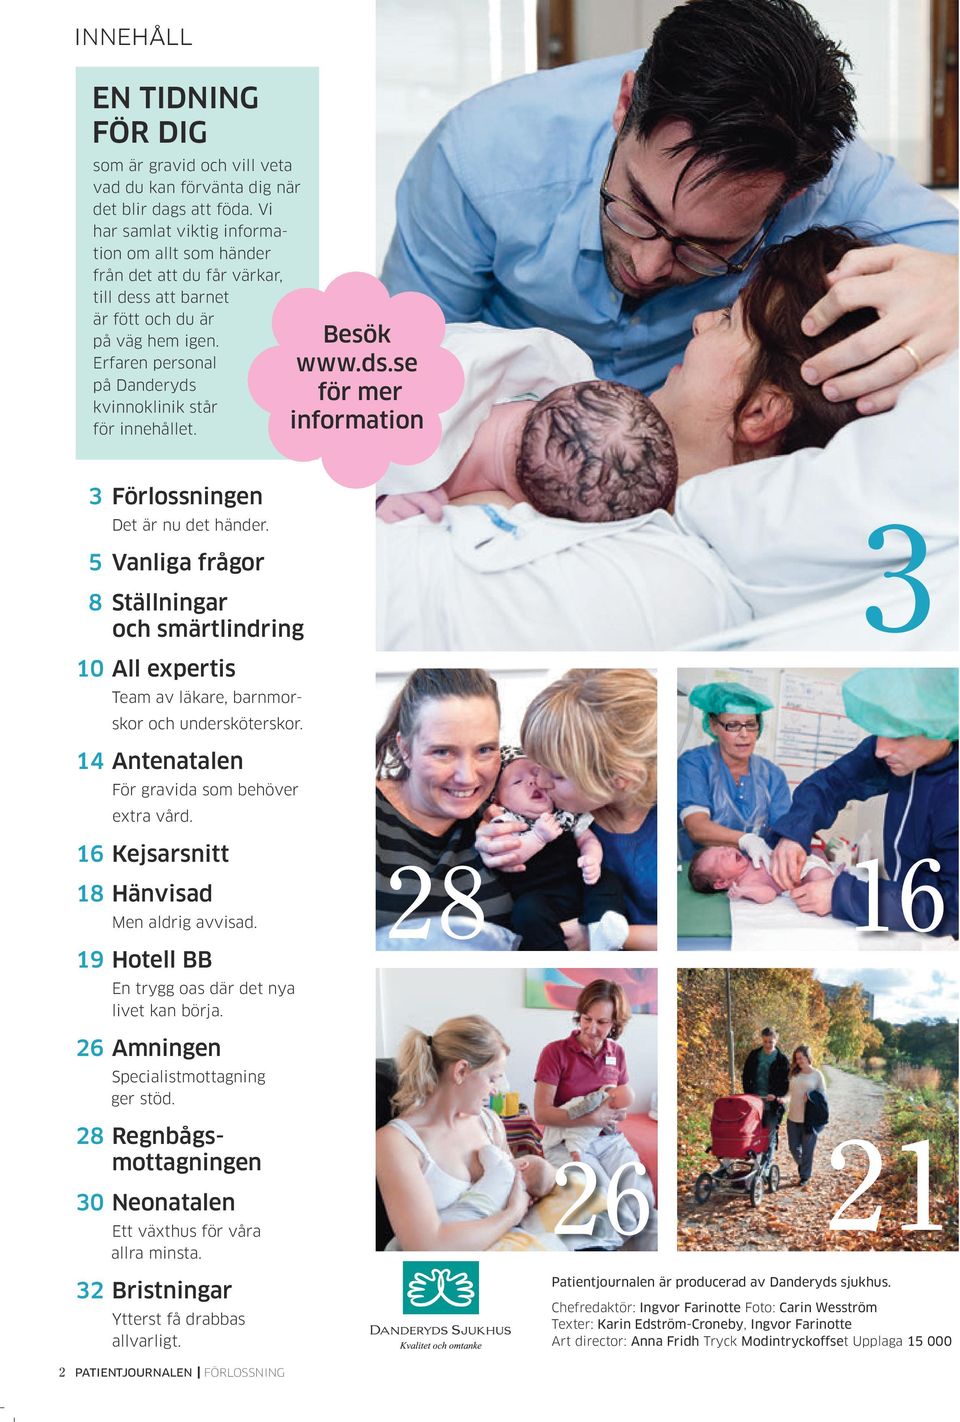 Besök www.ds.se för mer information 3 Förlossningen Det är nu det händer. 5 Vanliga frågor 8 Ställningar och smärtlindring 3 10 All expertis Team av läkare, barnmorskor och undersköterskor.